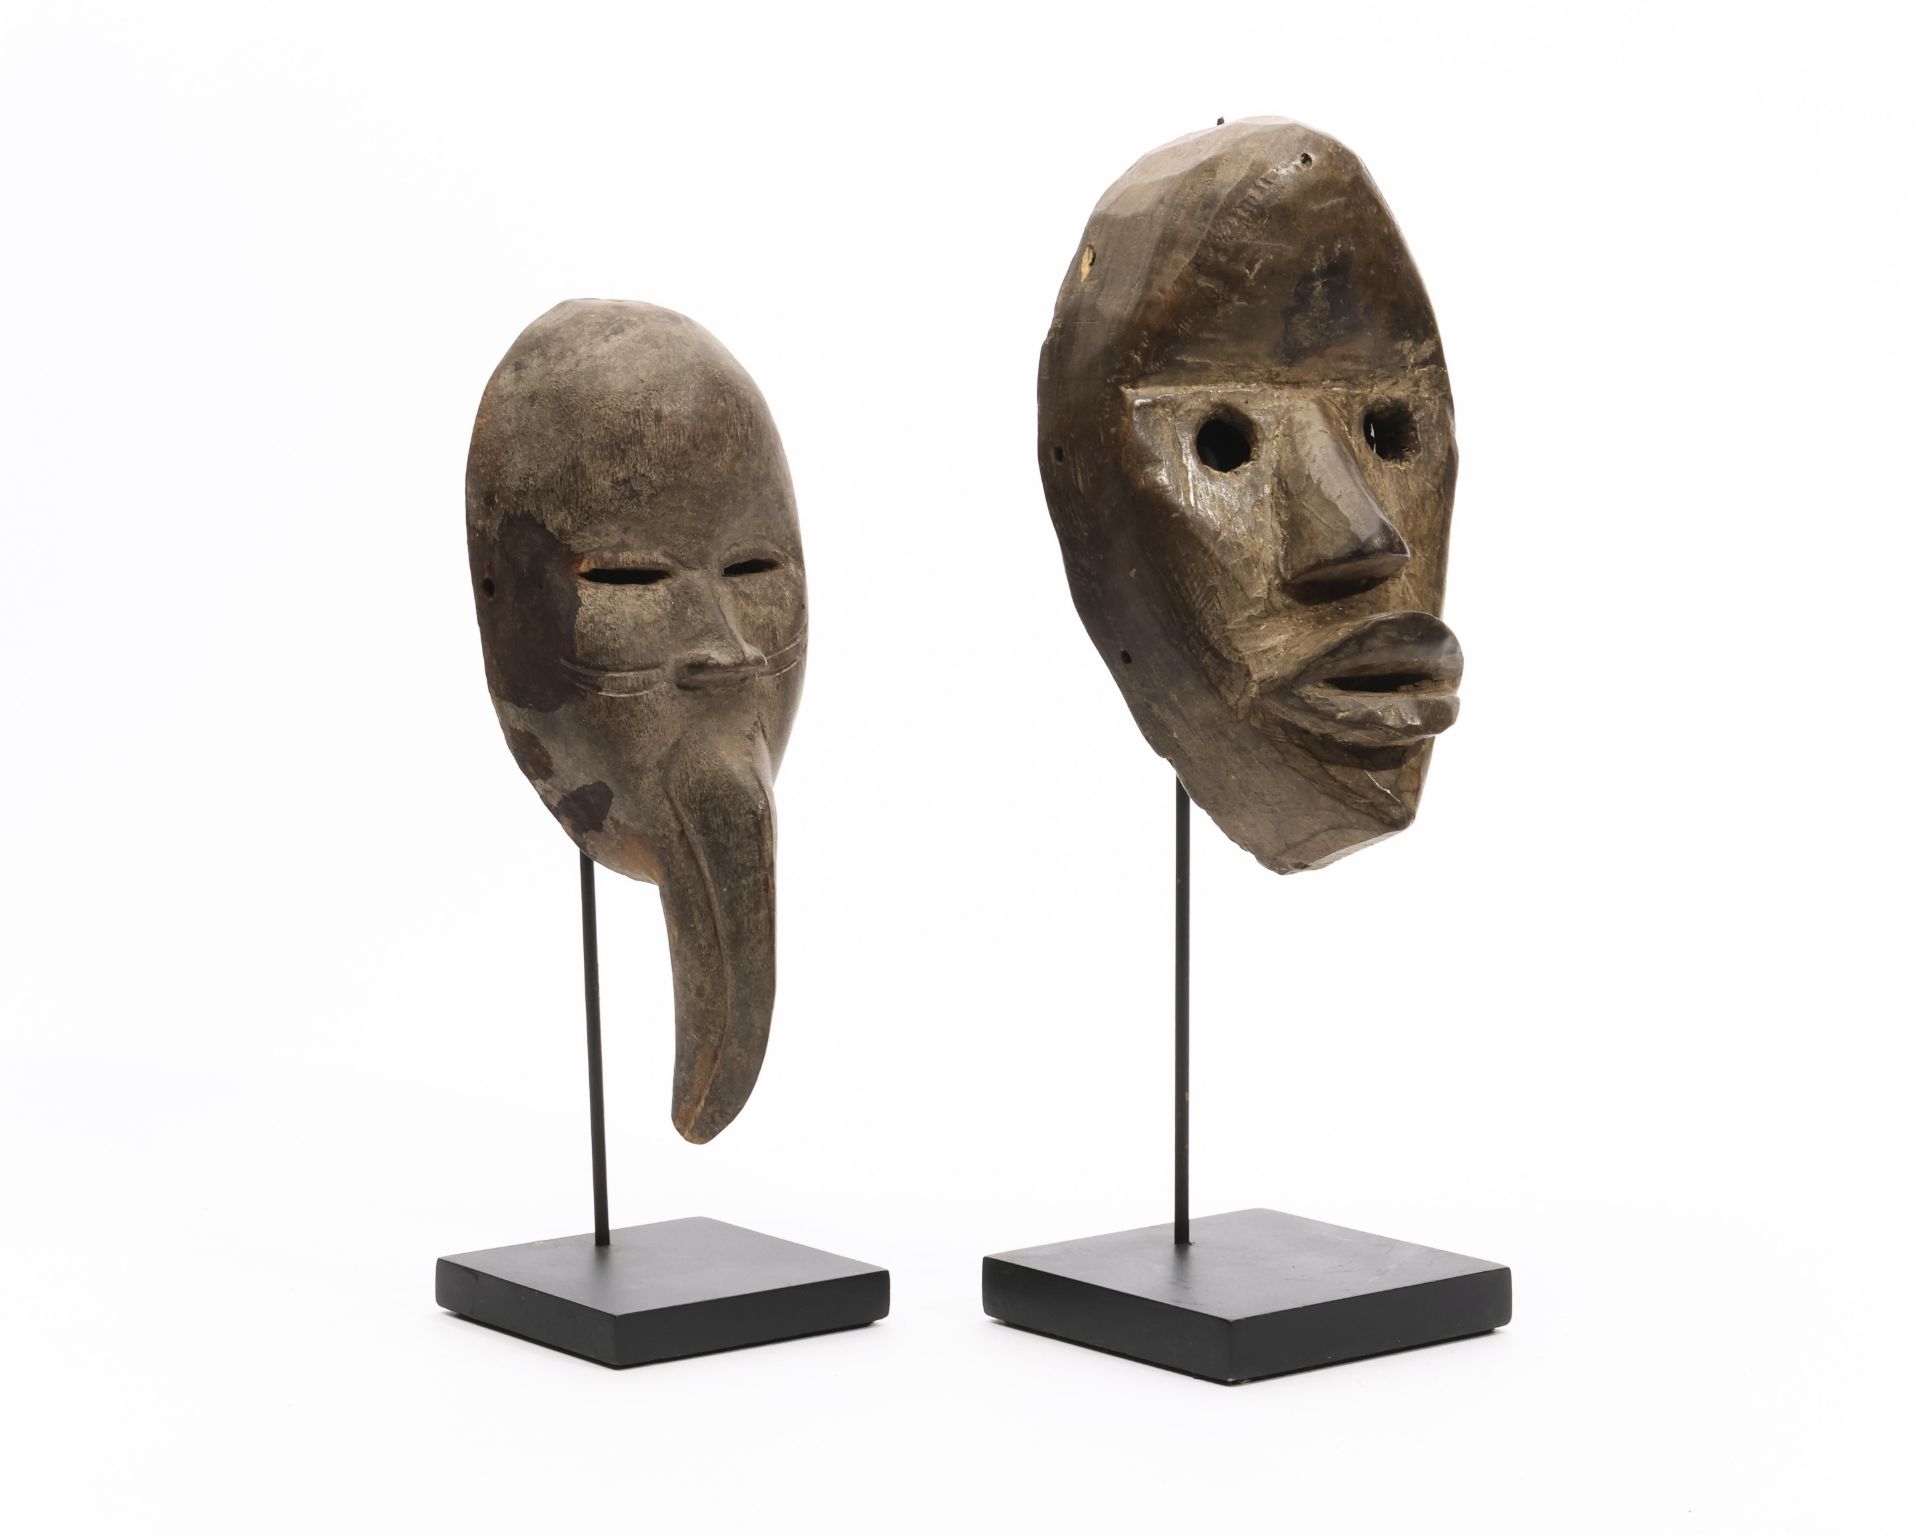 Ivory Coast, Dan, two passport masks